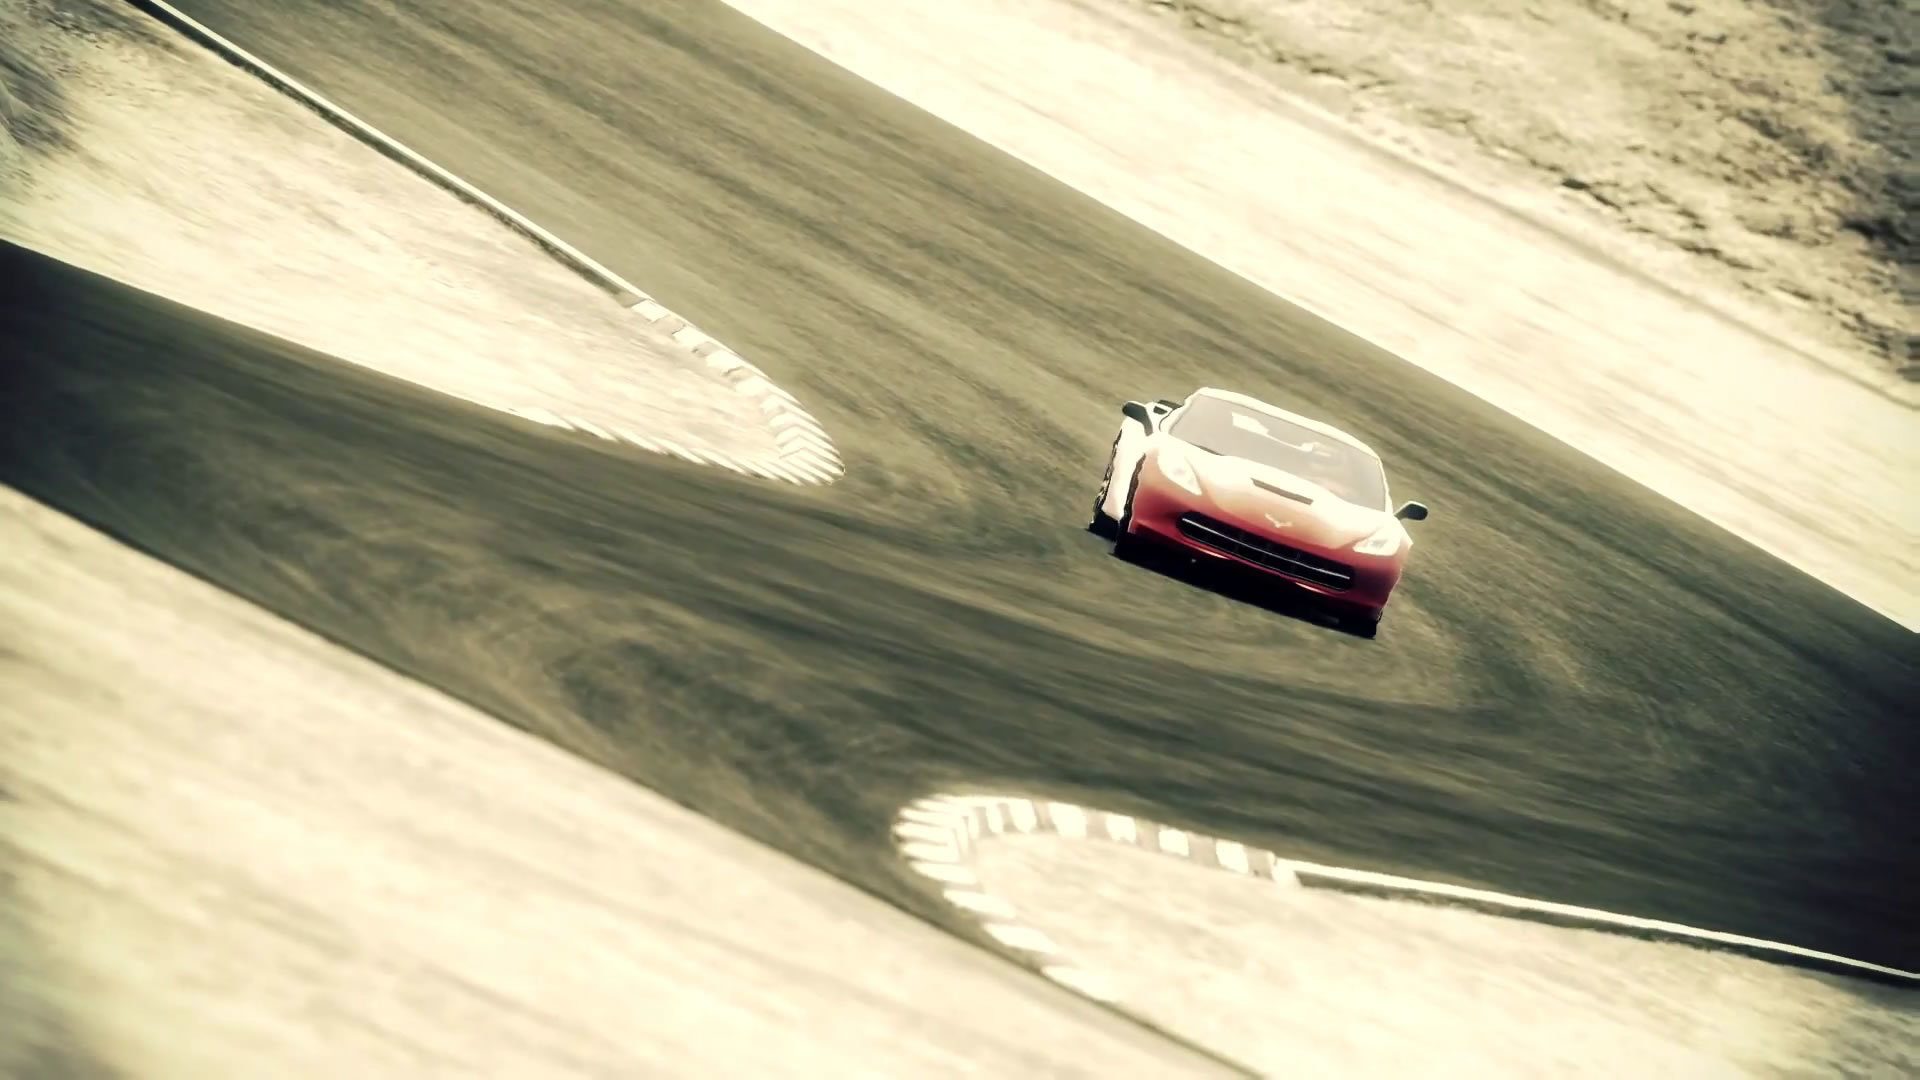 Gran Turismo 4 Online Test Version [Videos] - IGN